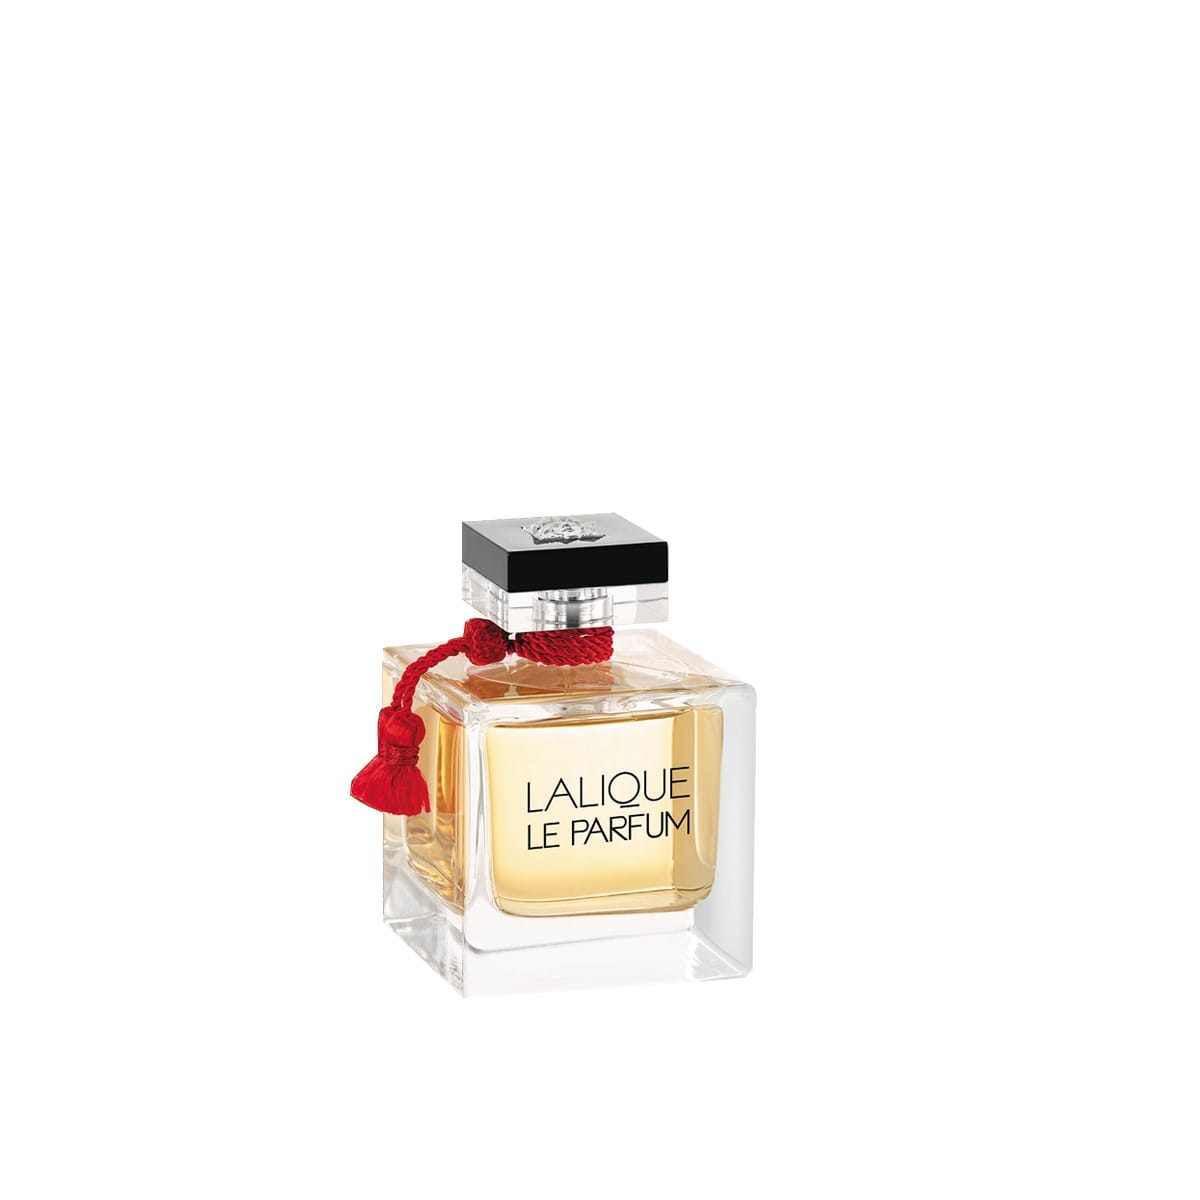 ادو پرفیوم زنانه لالیک له پارفوم lalique-le-parfum-eau-de-parfum